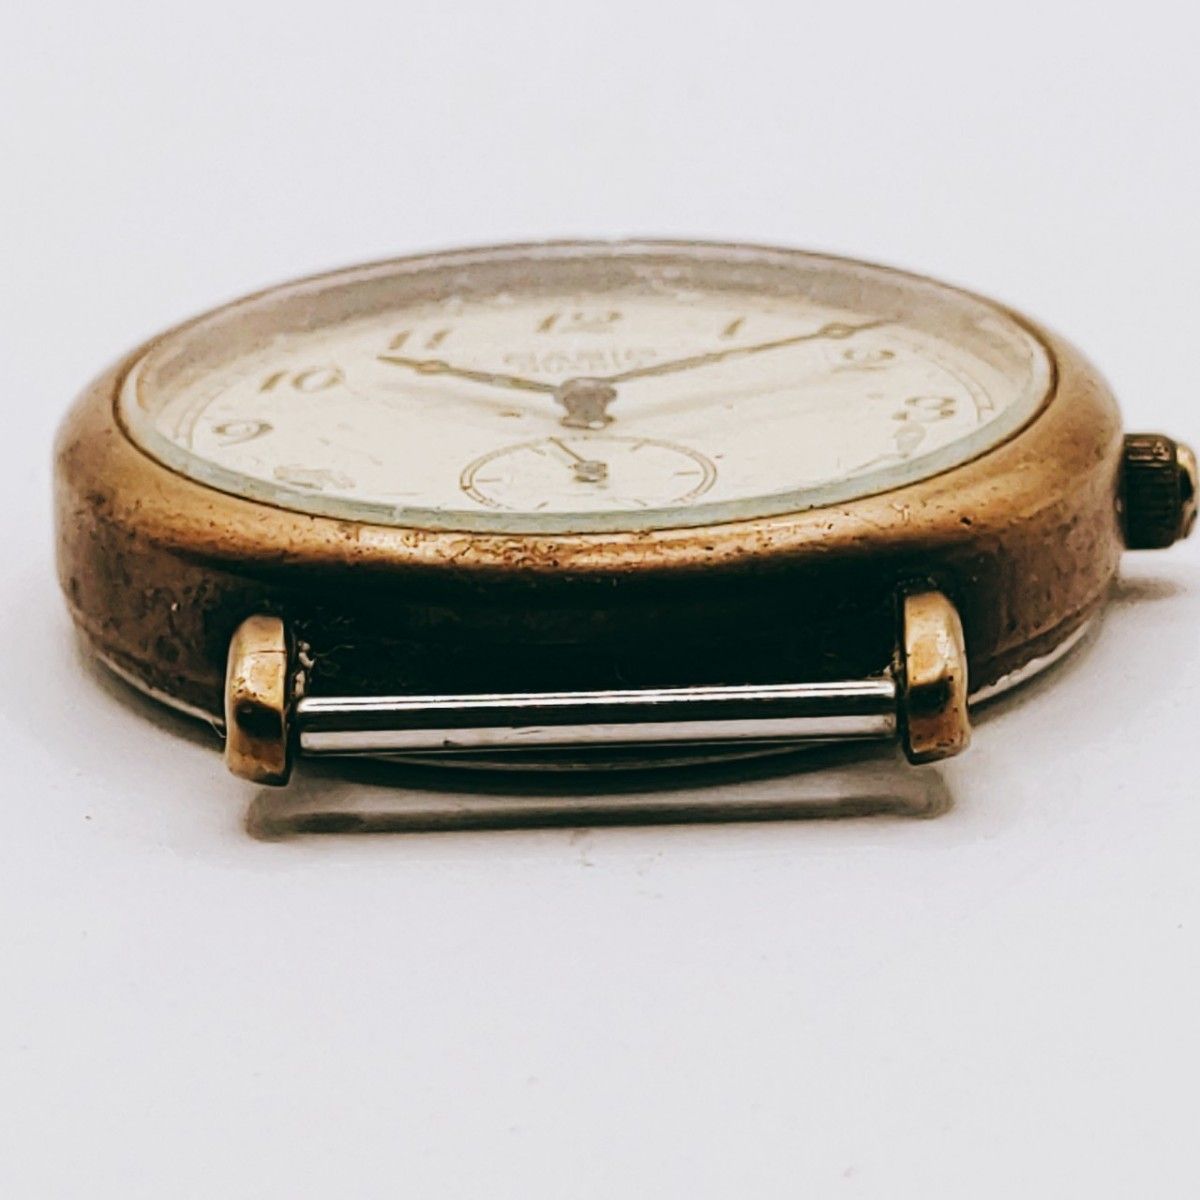 #120 CASIO カシオ MV-523 腕時計 アナログ 3針 白文字盤 ゴールド基調 時計 とけい トケイ アクセサリー